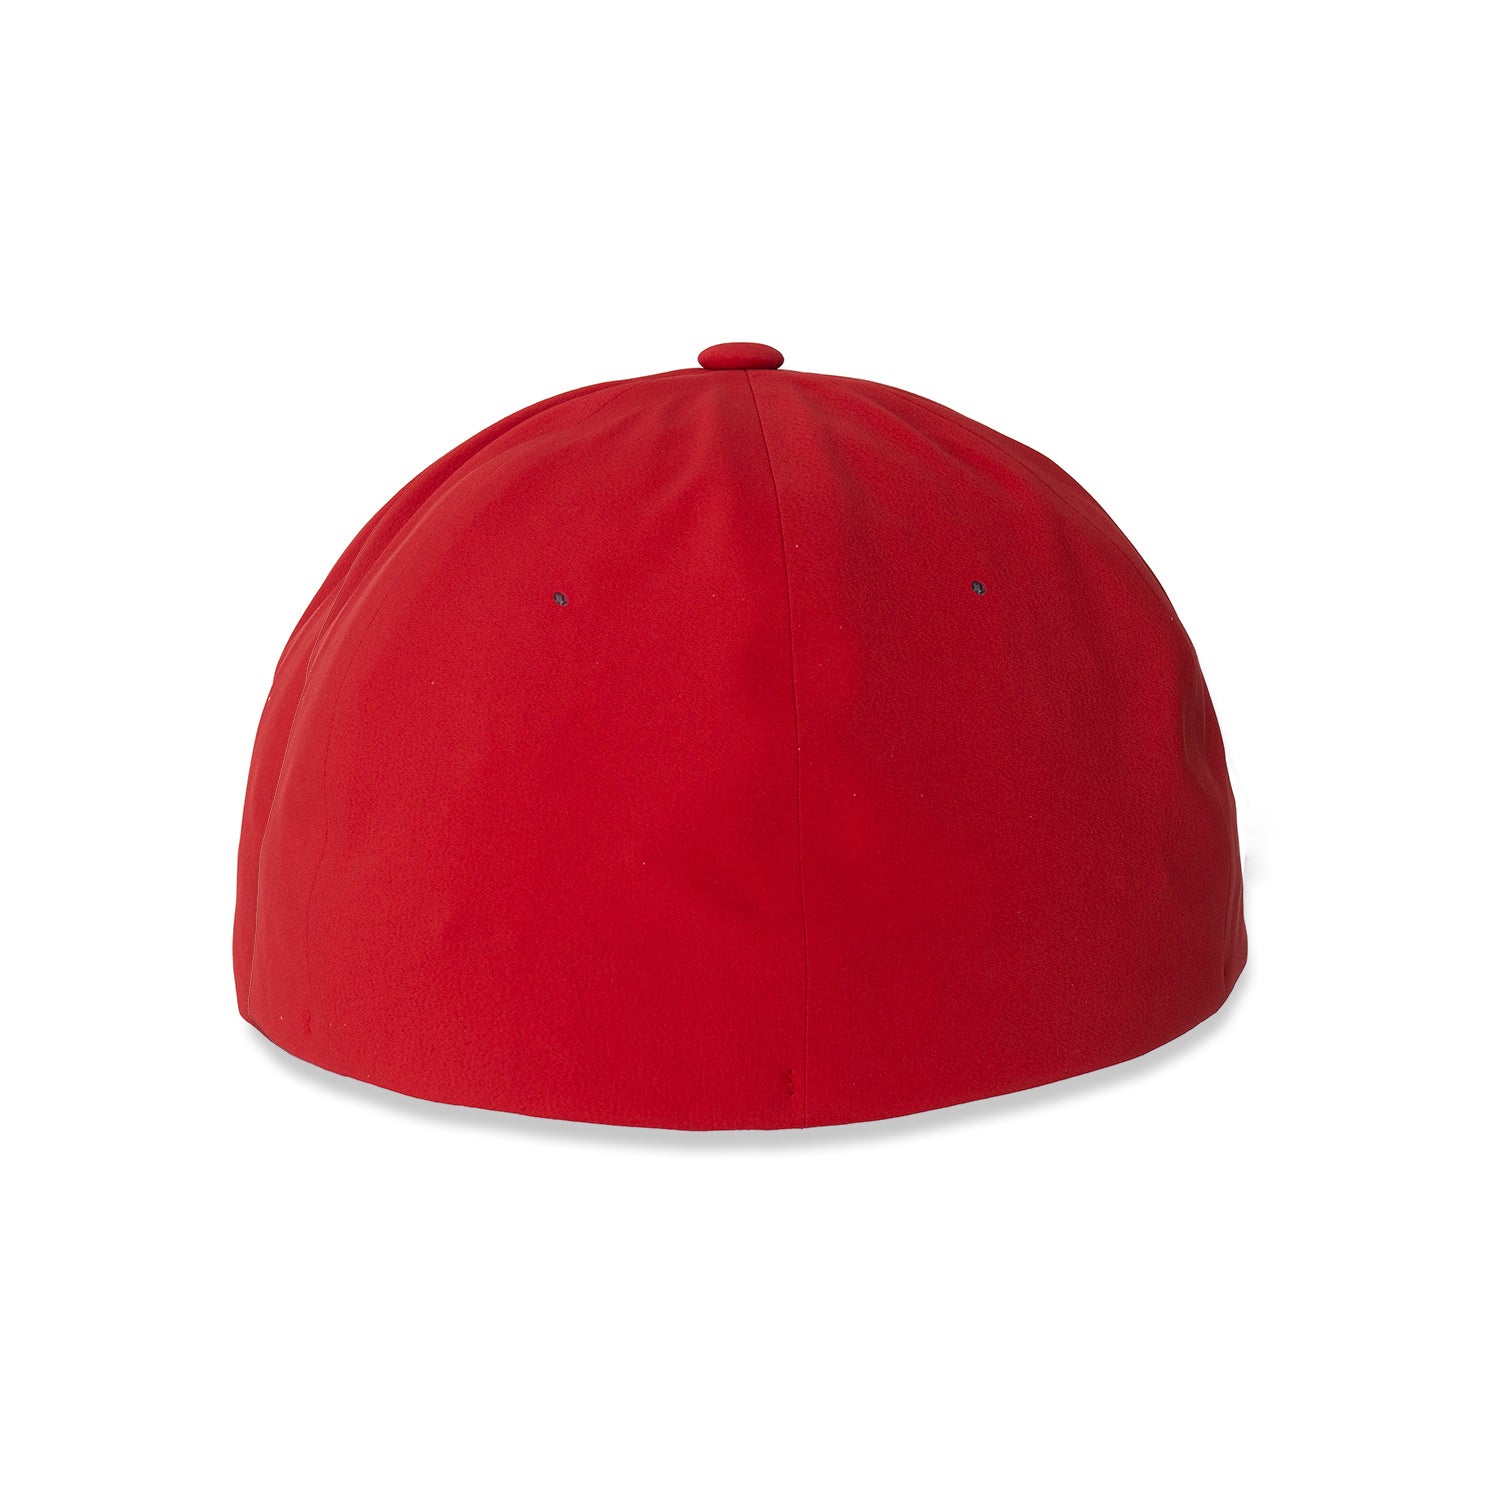 IMSA – Hat Flexfit - IMSA Team Red